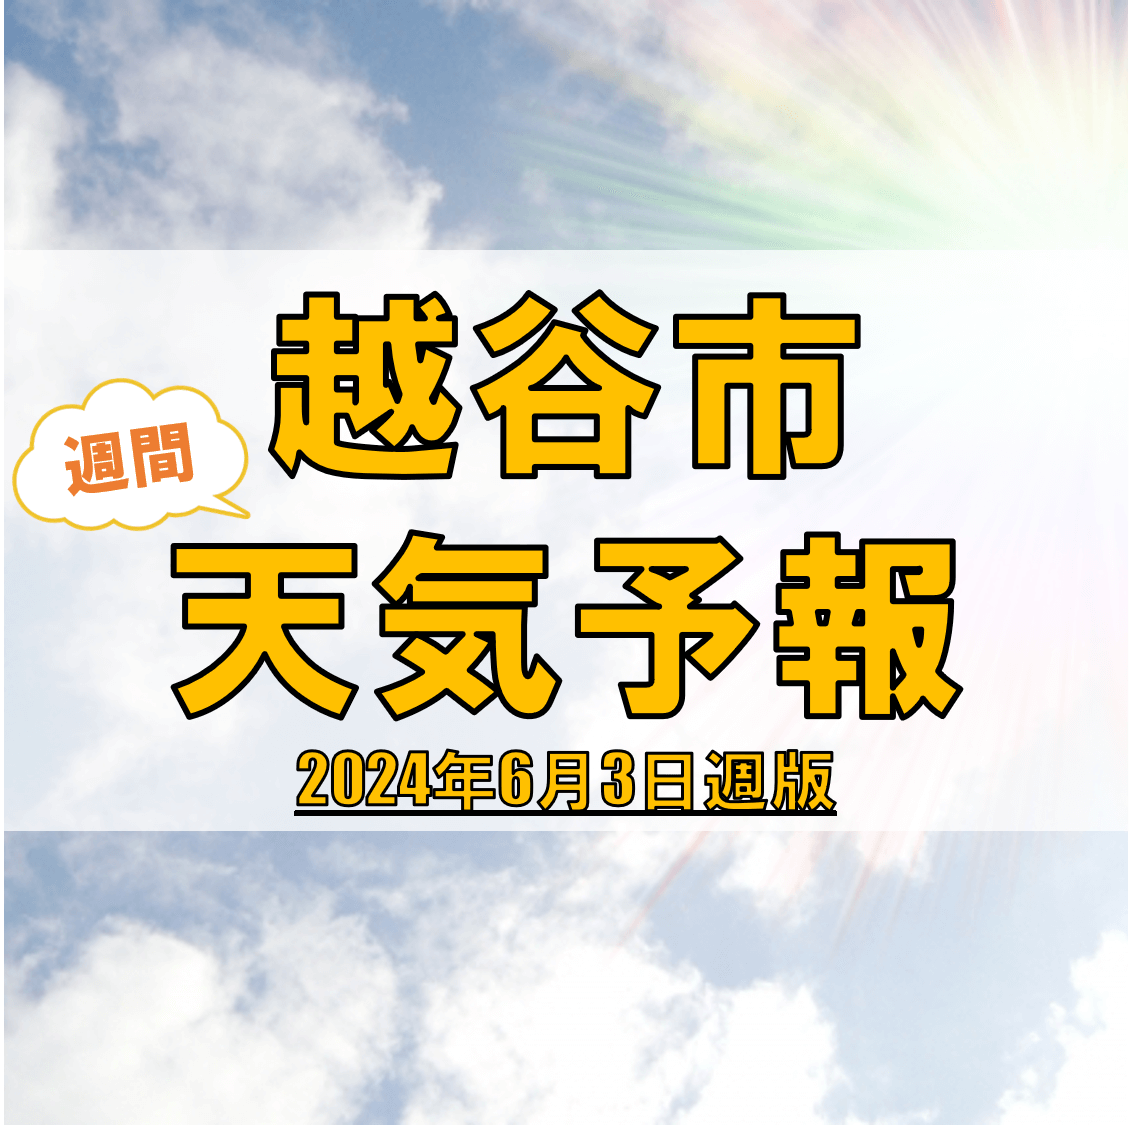 越谷市の天気 週間予報【2024年6月3日週】